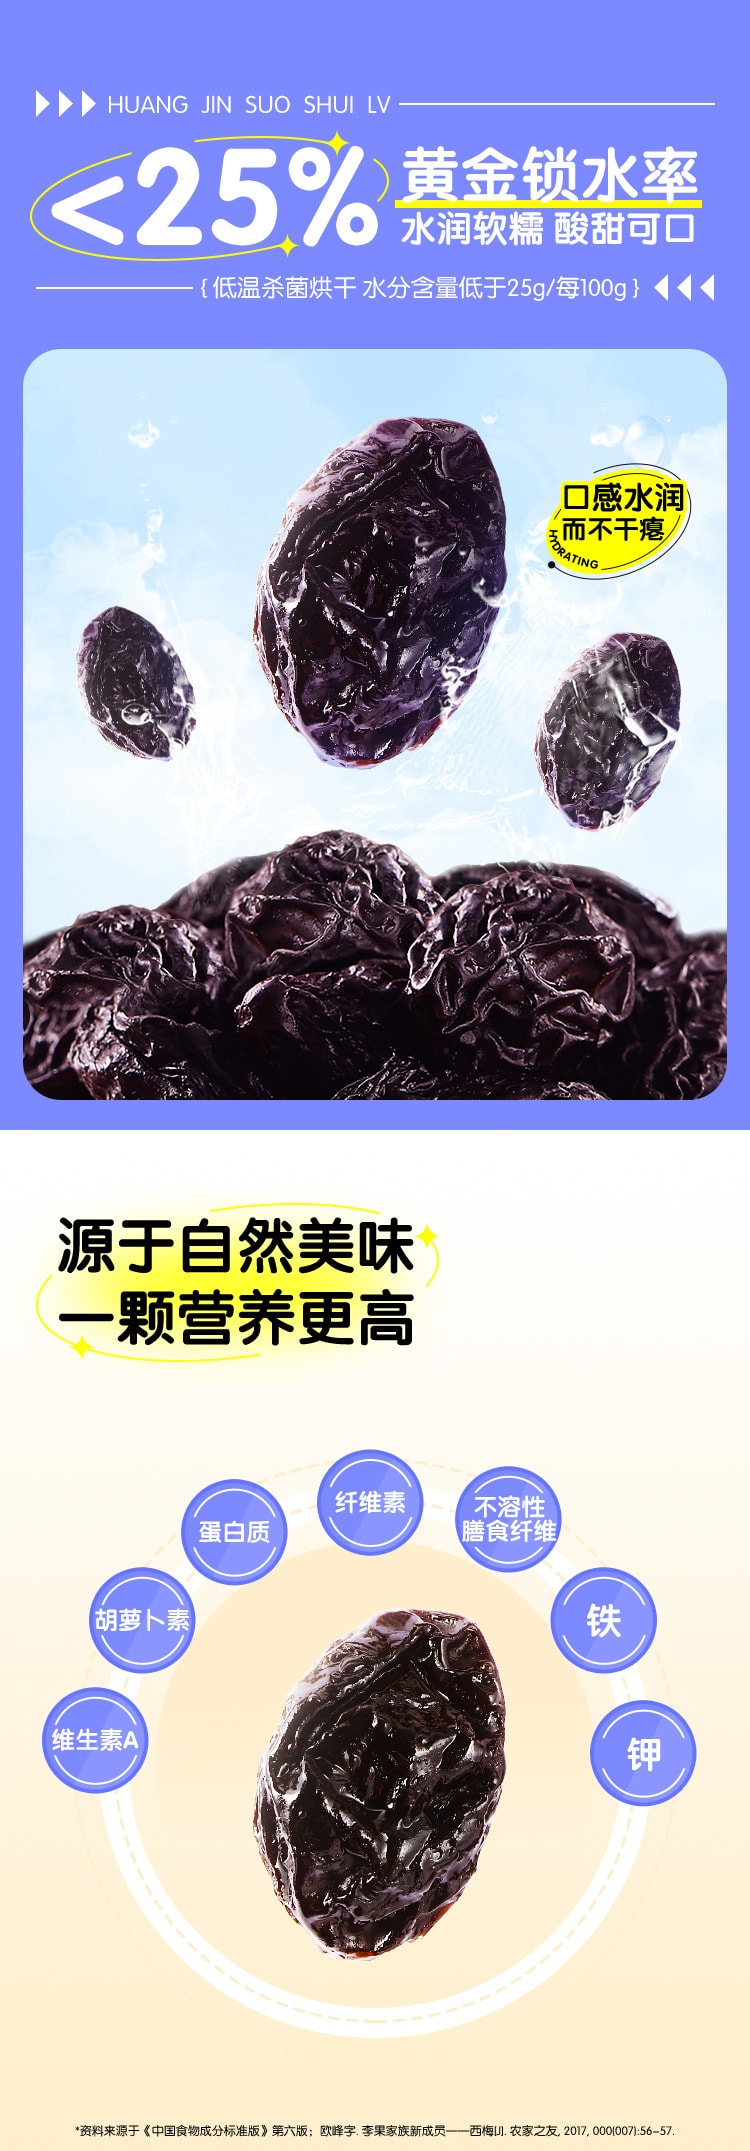 【中国直邮】三只松鼠 西梅干 新疆无添加低脂健康孕妇零食梅子果干 50g/袋